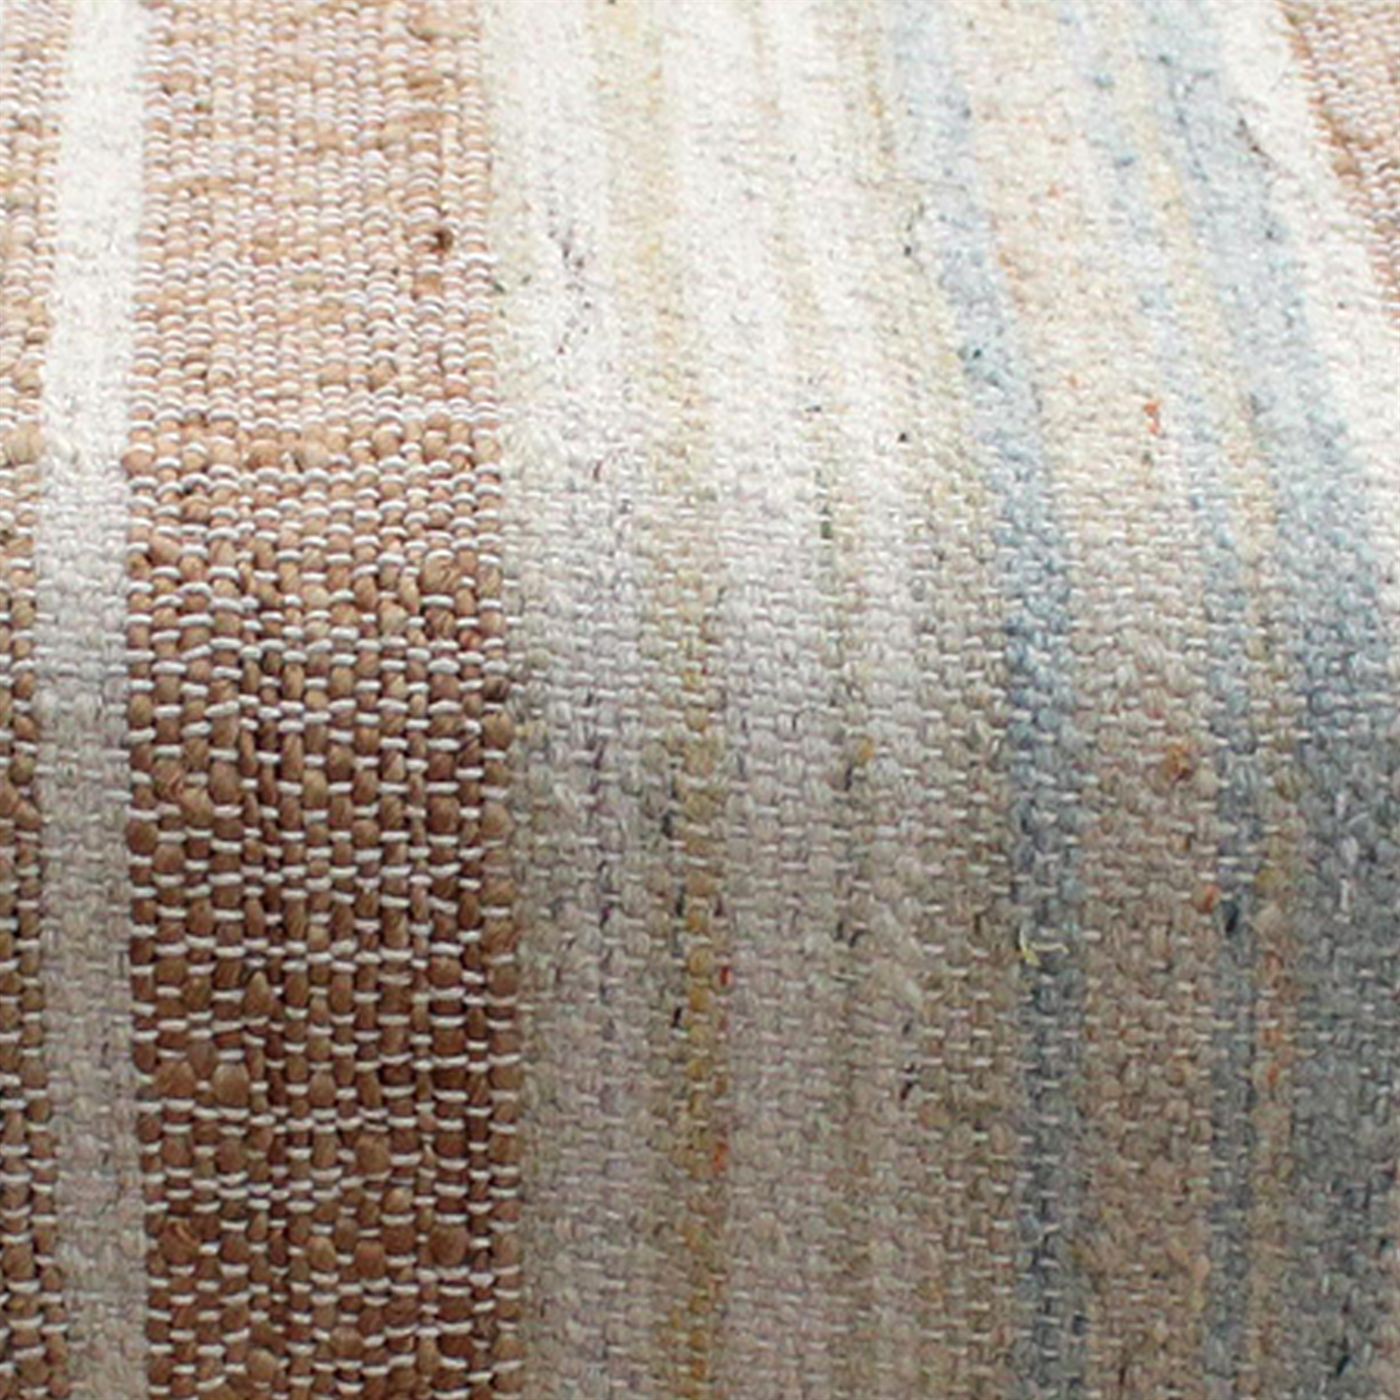 Toponas Bench, Jute, Wool, Natural, Multi, Punja, Flat Weave